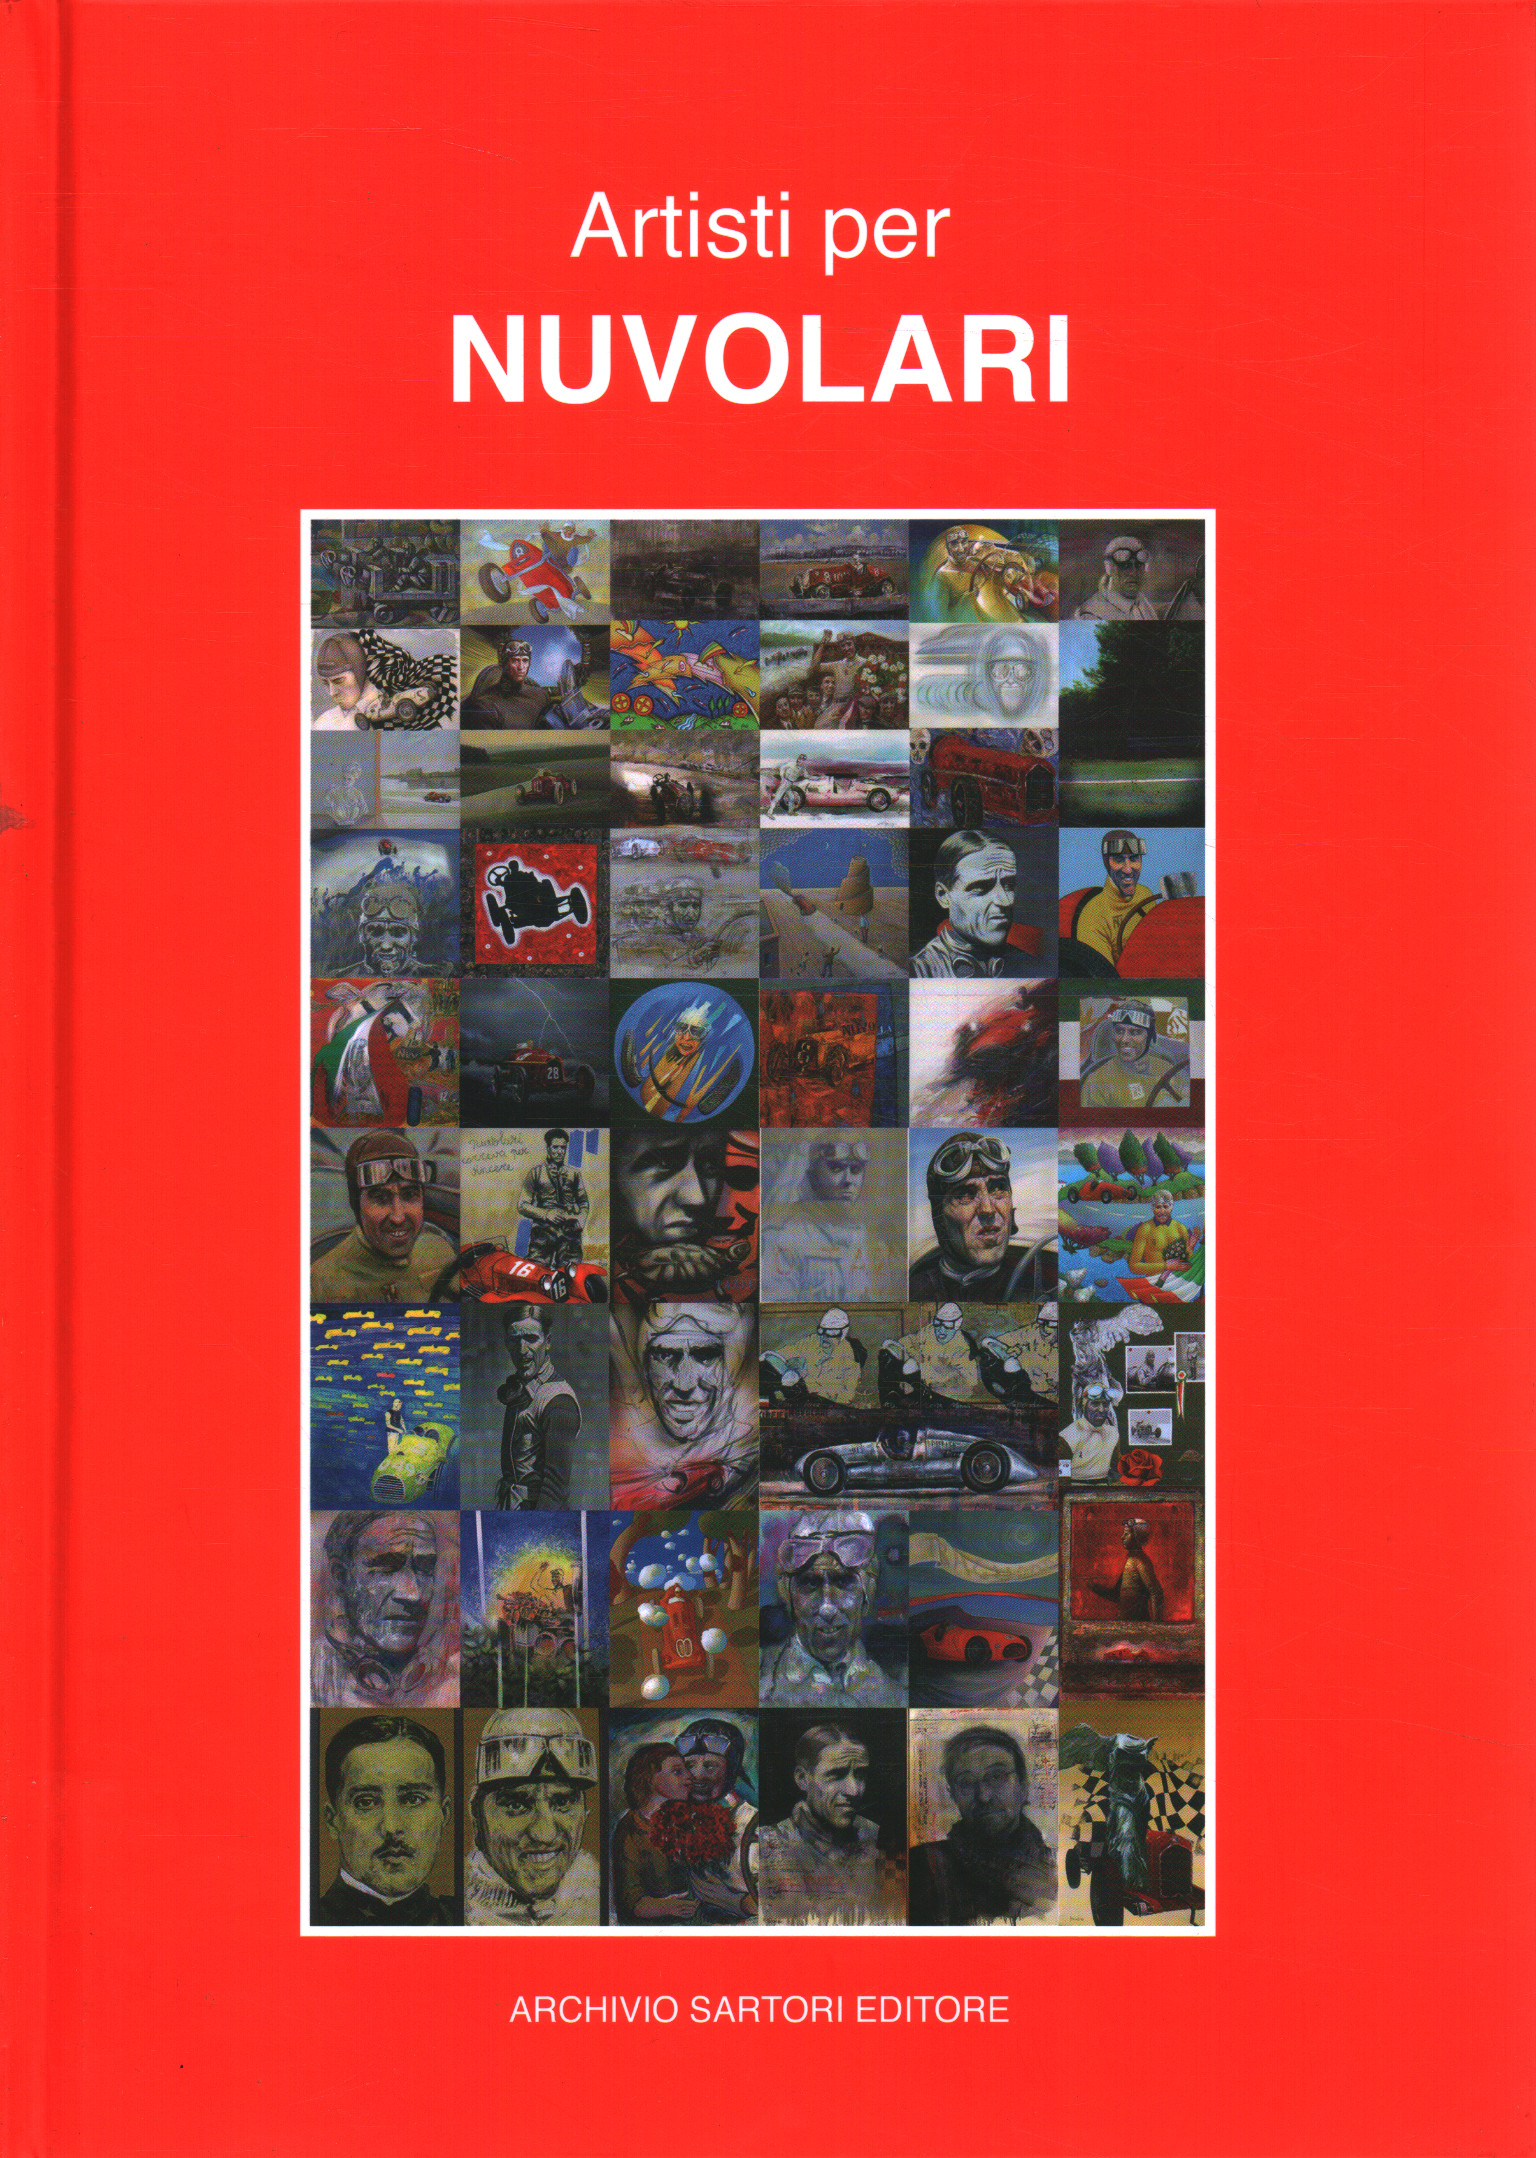 Künstler für Nuvolari